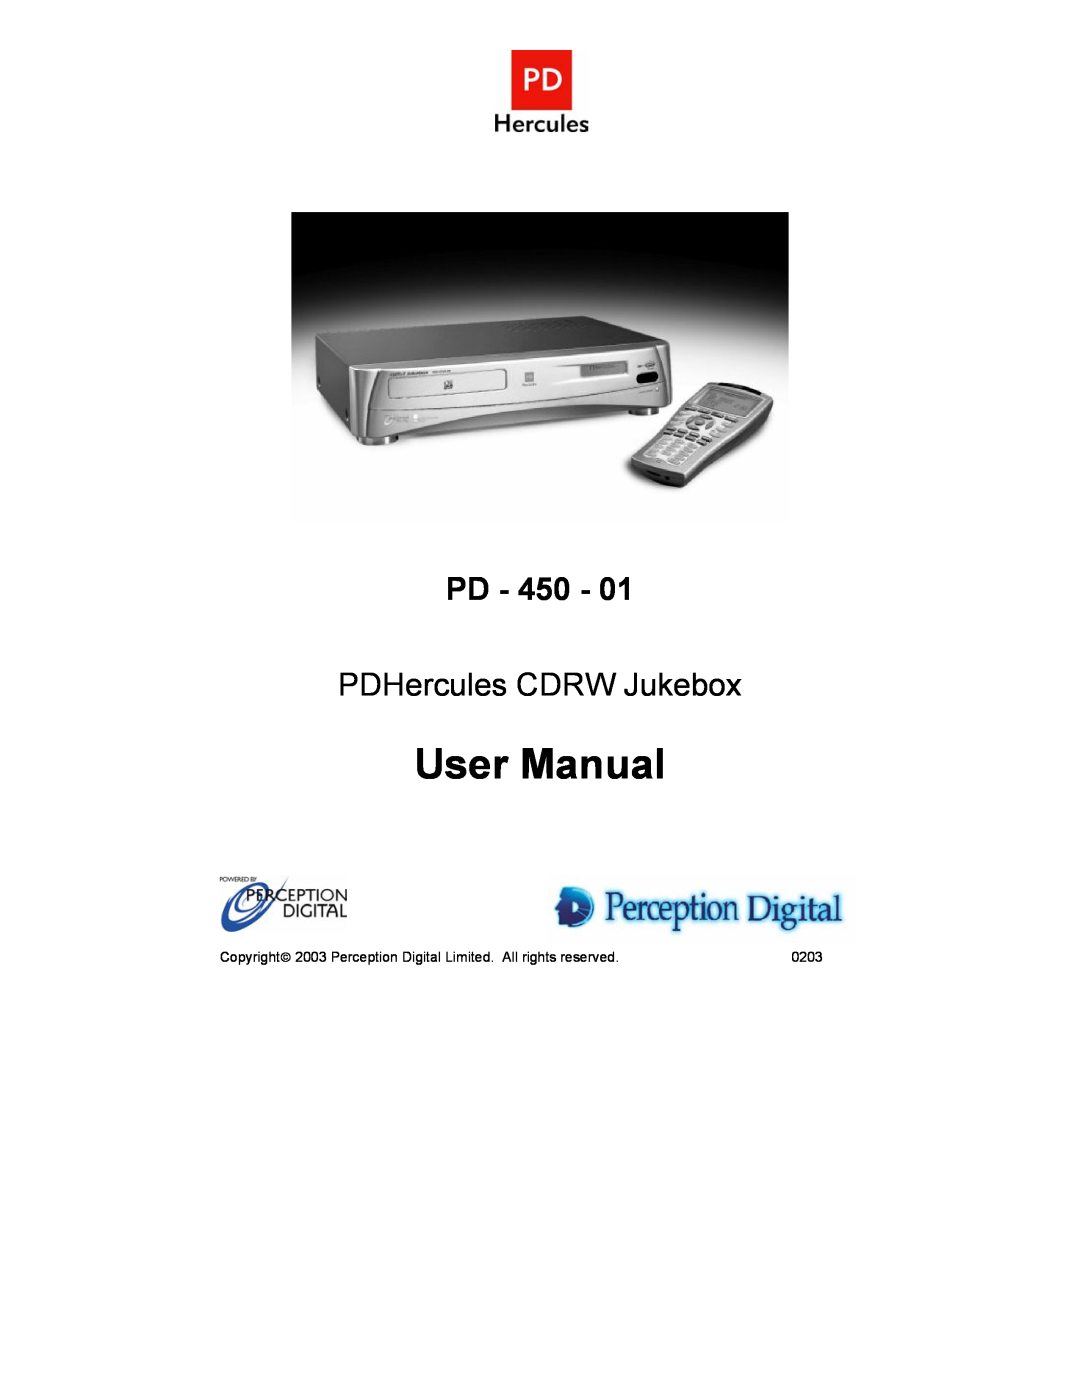 Perception Digital PD - 450 - 01 user manual Pd, PDHercules CDRW Jukebox 